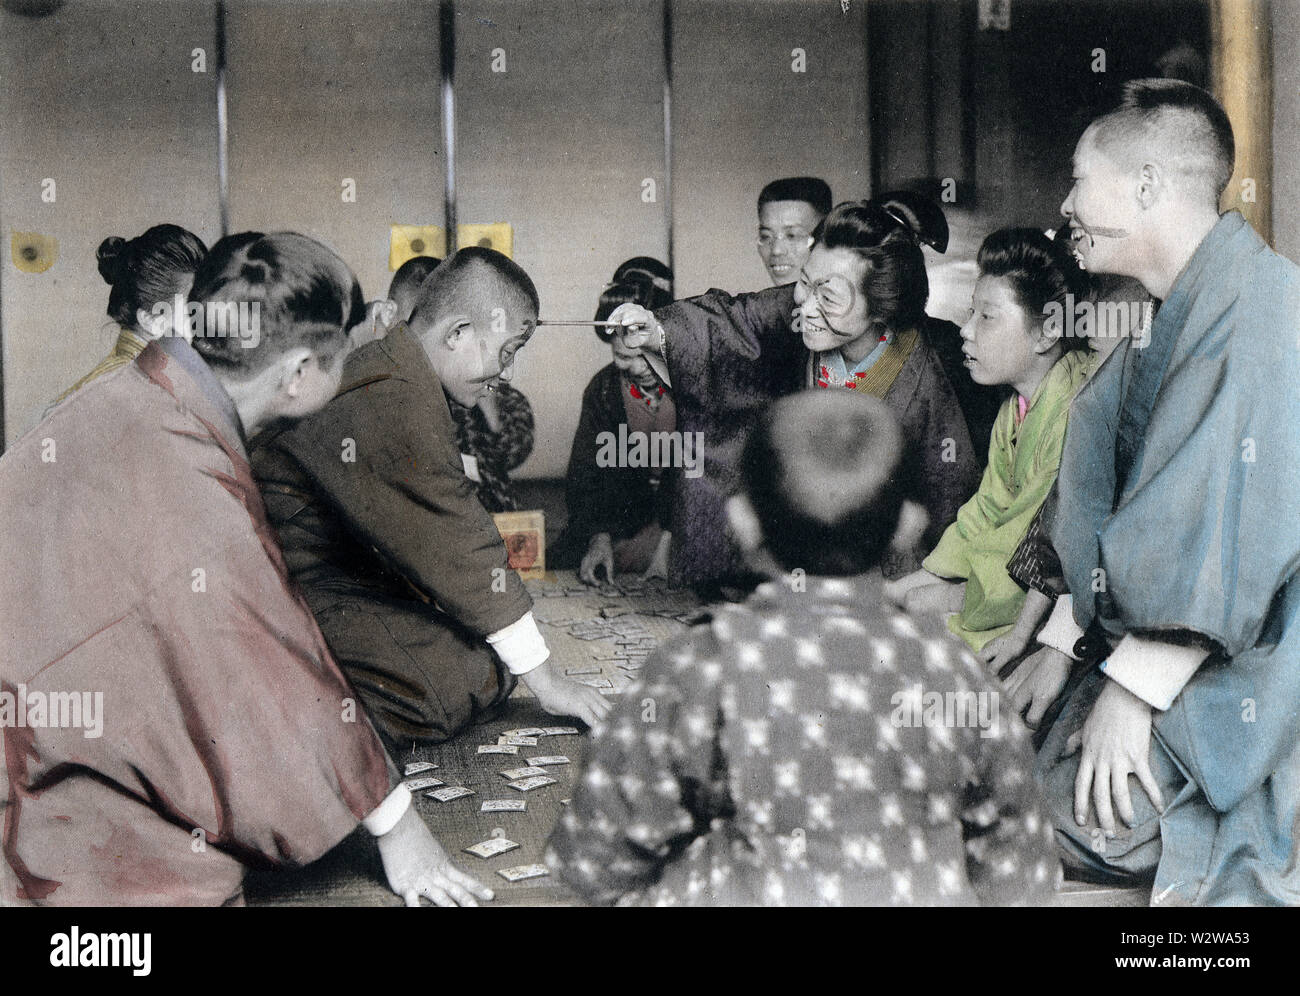 [ 1900 - Japon Nouvel An japonais - Jouer au Karuta ] - perdants dans le jeu de cartes de karuta (voir le Nouvel An 18) de l'encre peint sur leur visage. Cette image fait partie de la nouvelle année au Japon, un livre publié par le photographe Kobe Kozaburo Tamamura en 1906 (ère Meiji) 39. 20e siècle phototypie vintage print. Banque D'Images